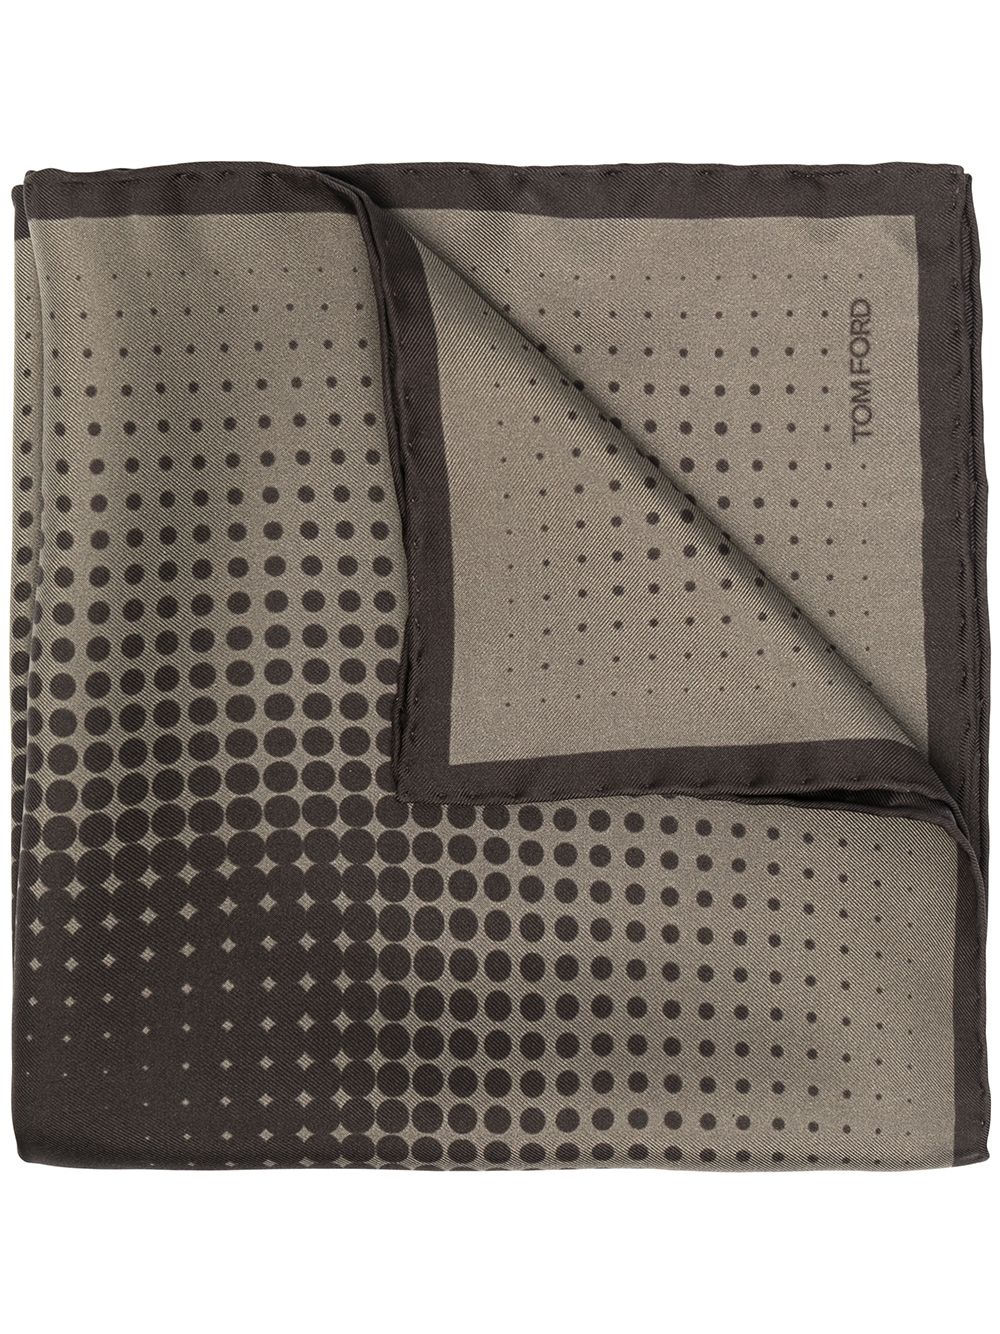 фото Tom ford платок-паше с геометричным принтом